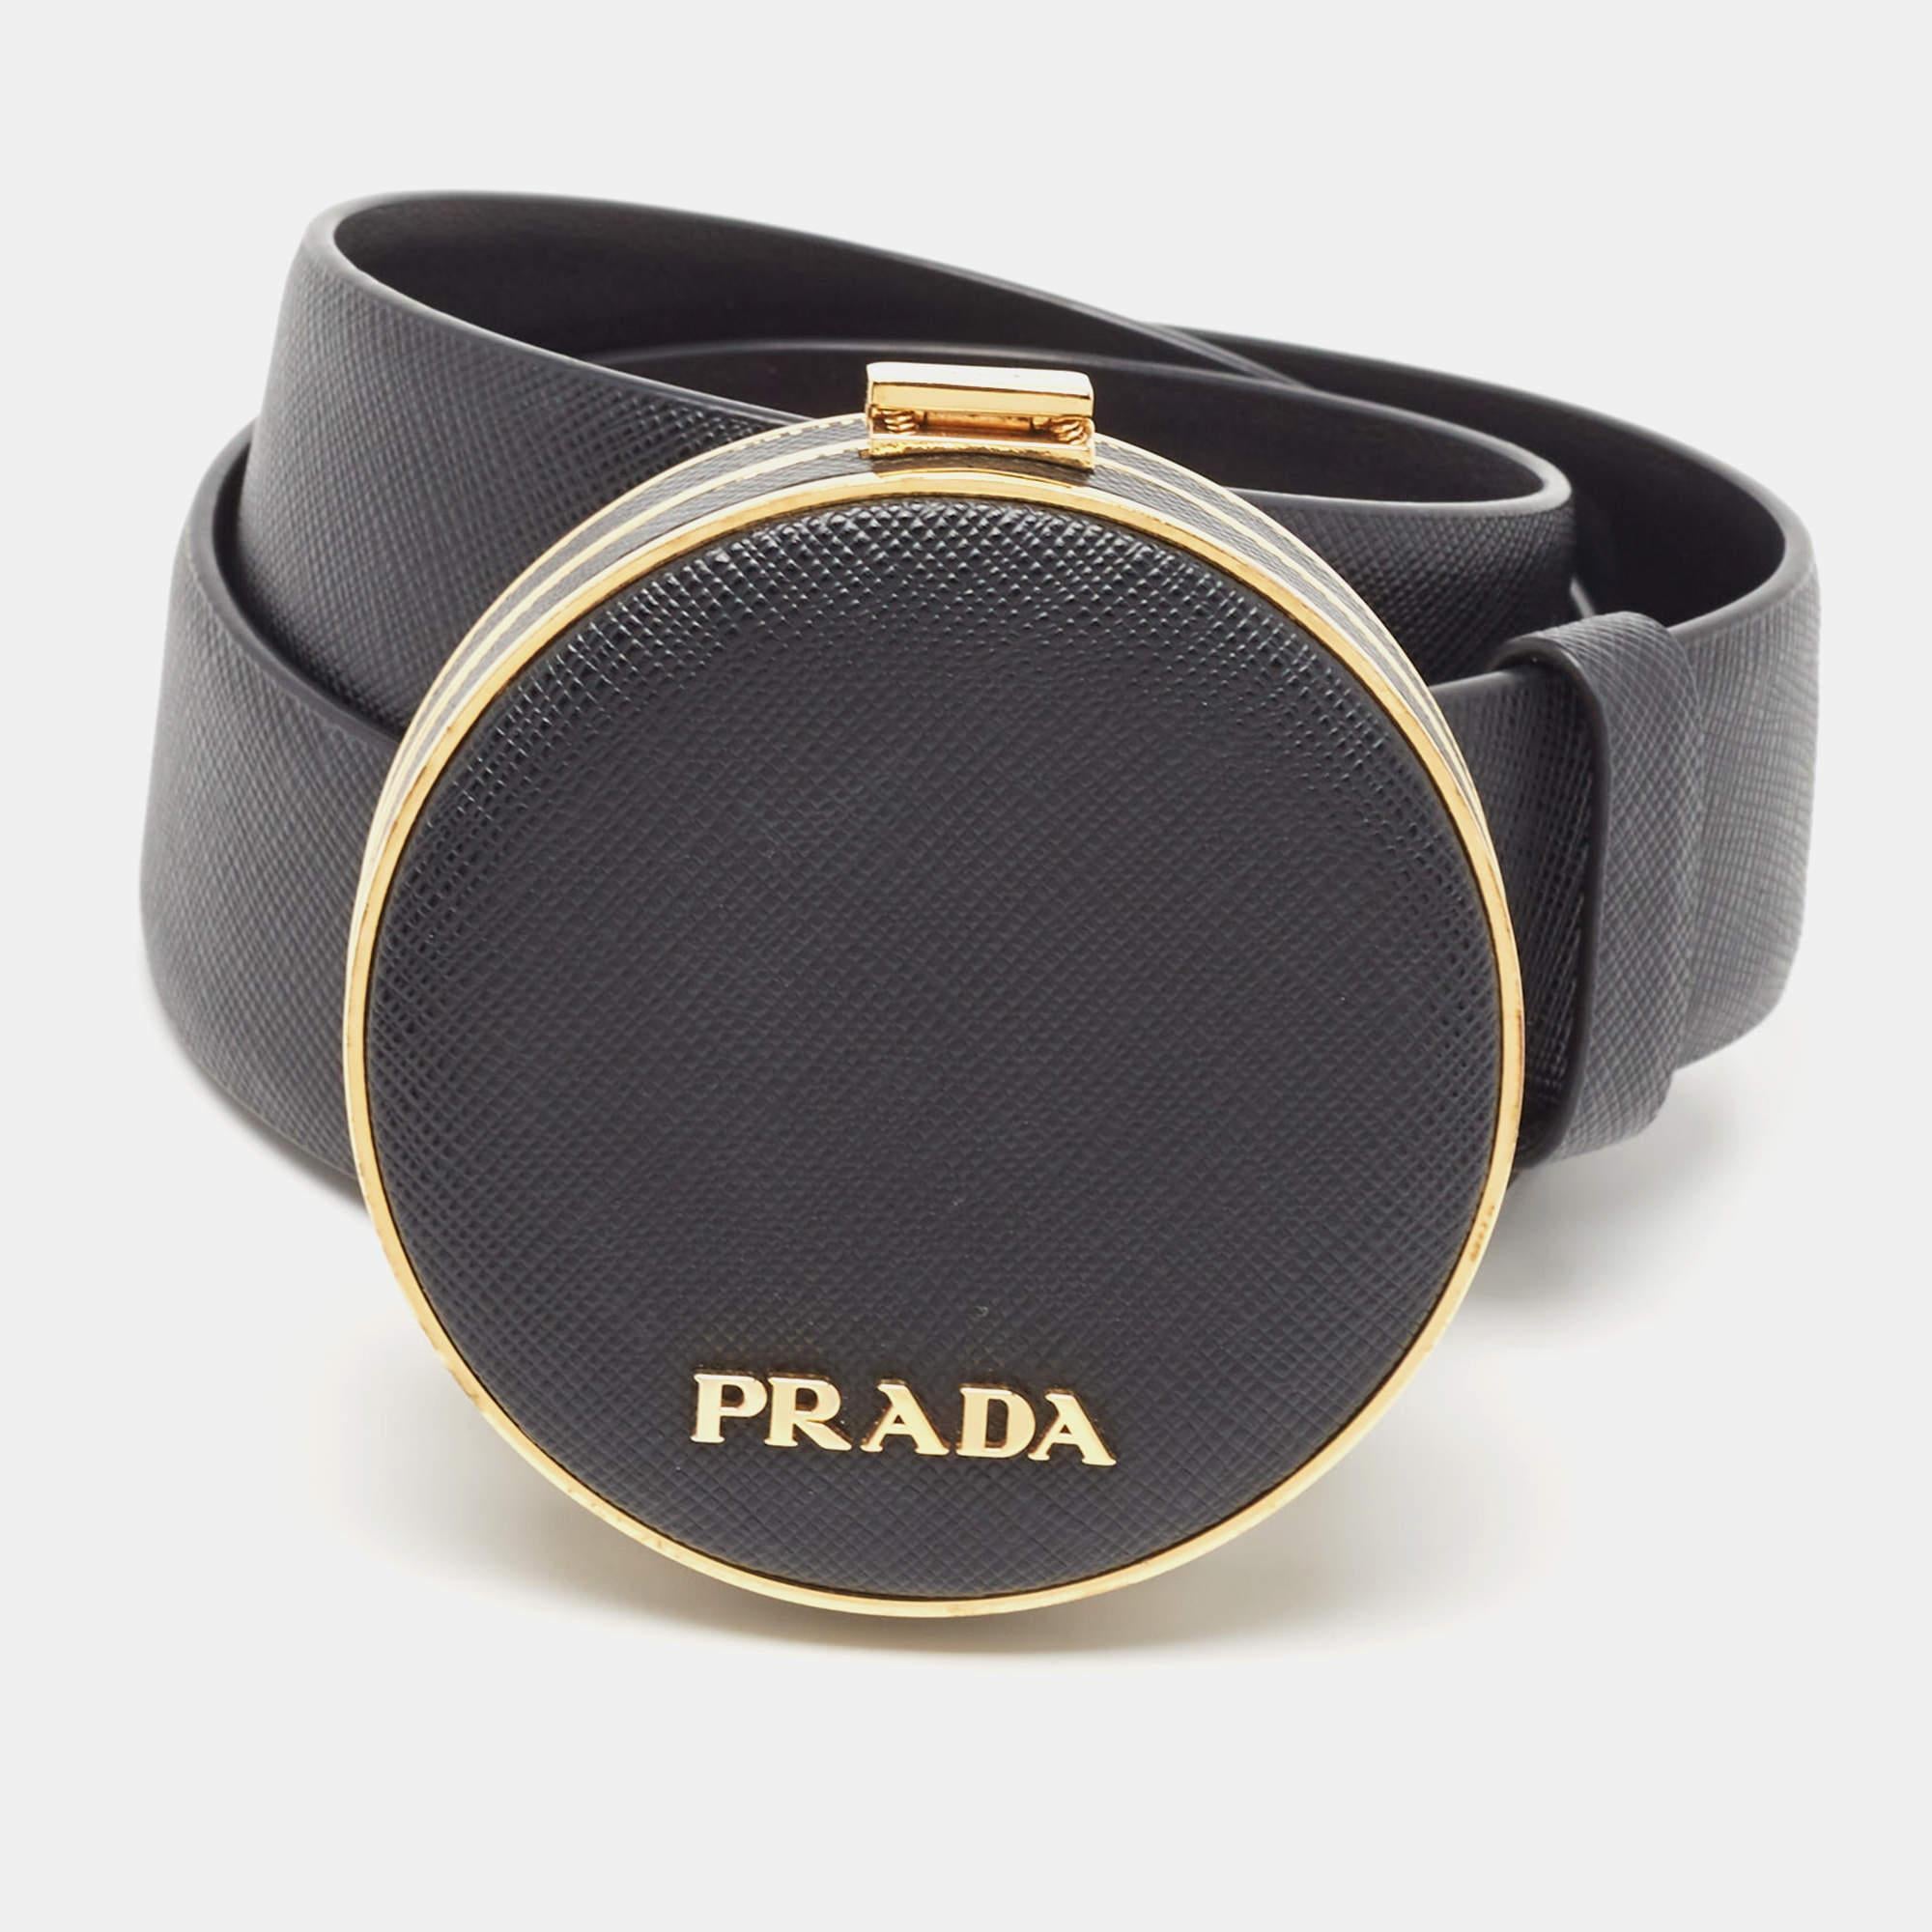 Dieser Minaudière-Gürtel von Prada verleiht Ihrem Outfit einen ganz besonderen Touch. Perfekt verarbeitet, strahlt sie Raffinesse und Luxus aus und ist damit das ultimative Accessoire für alle, die Qualität und Mode gleichermaßen schätzen.

Enthält: